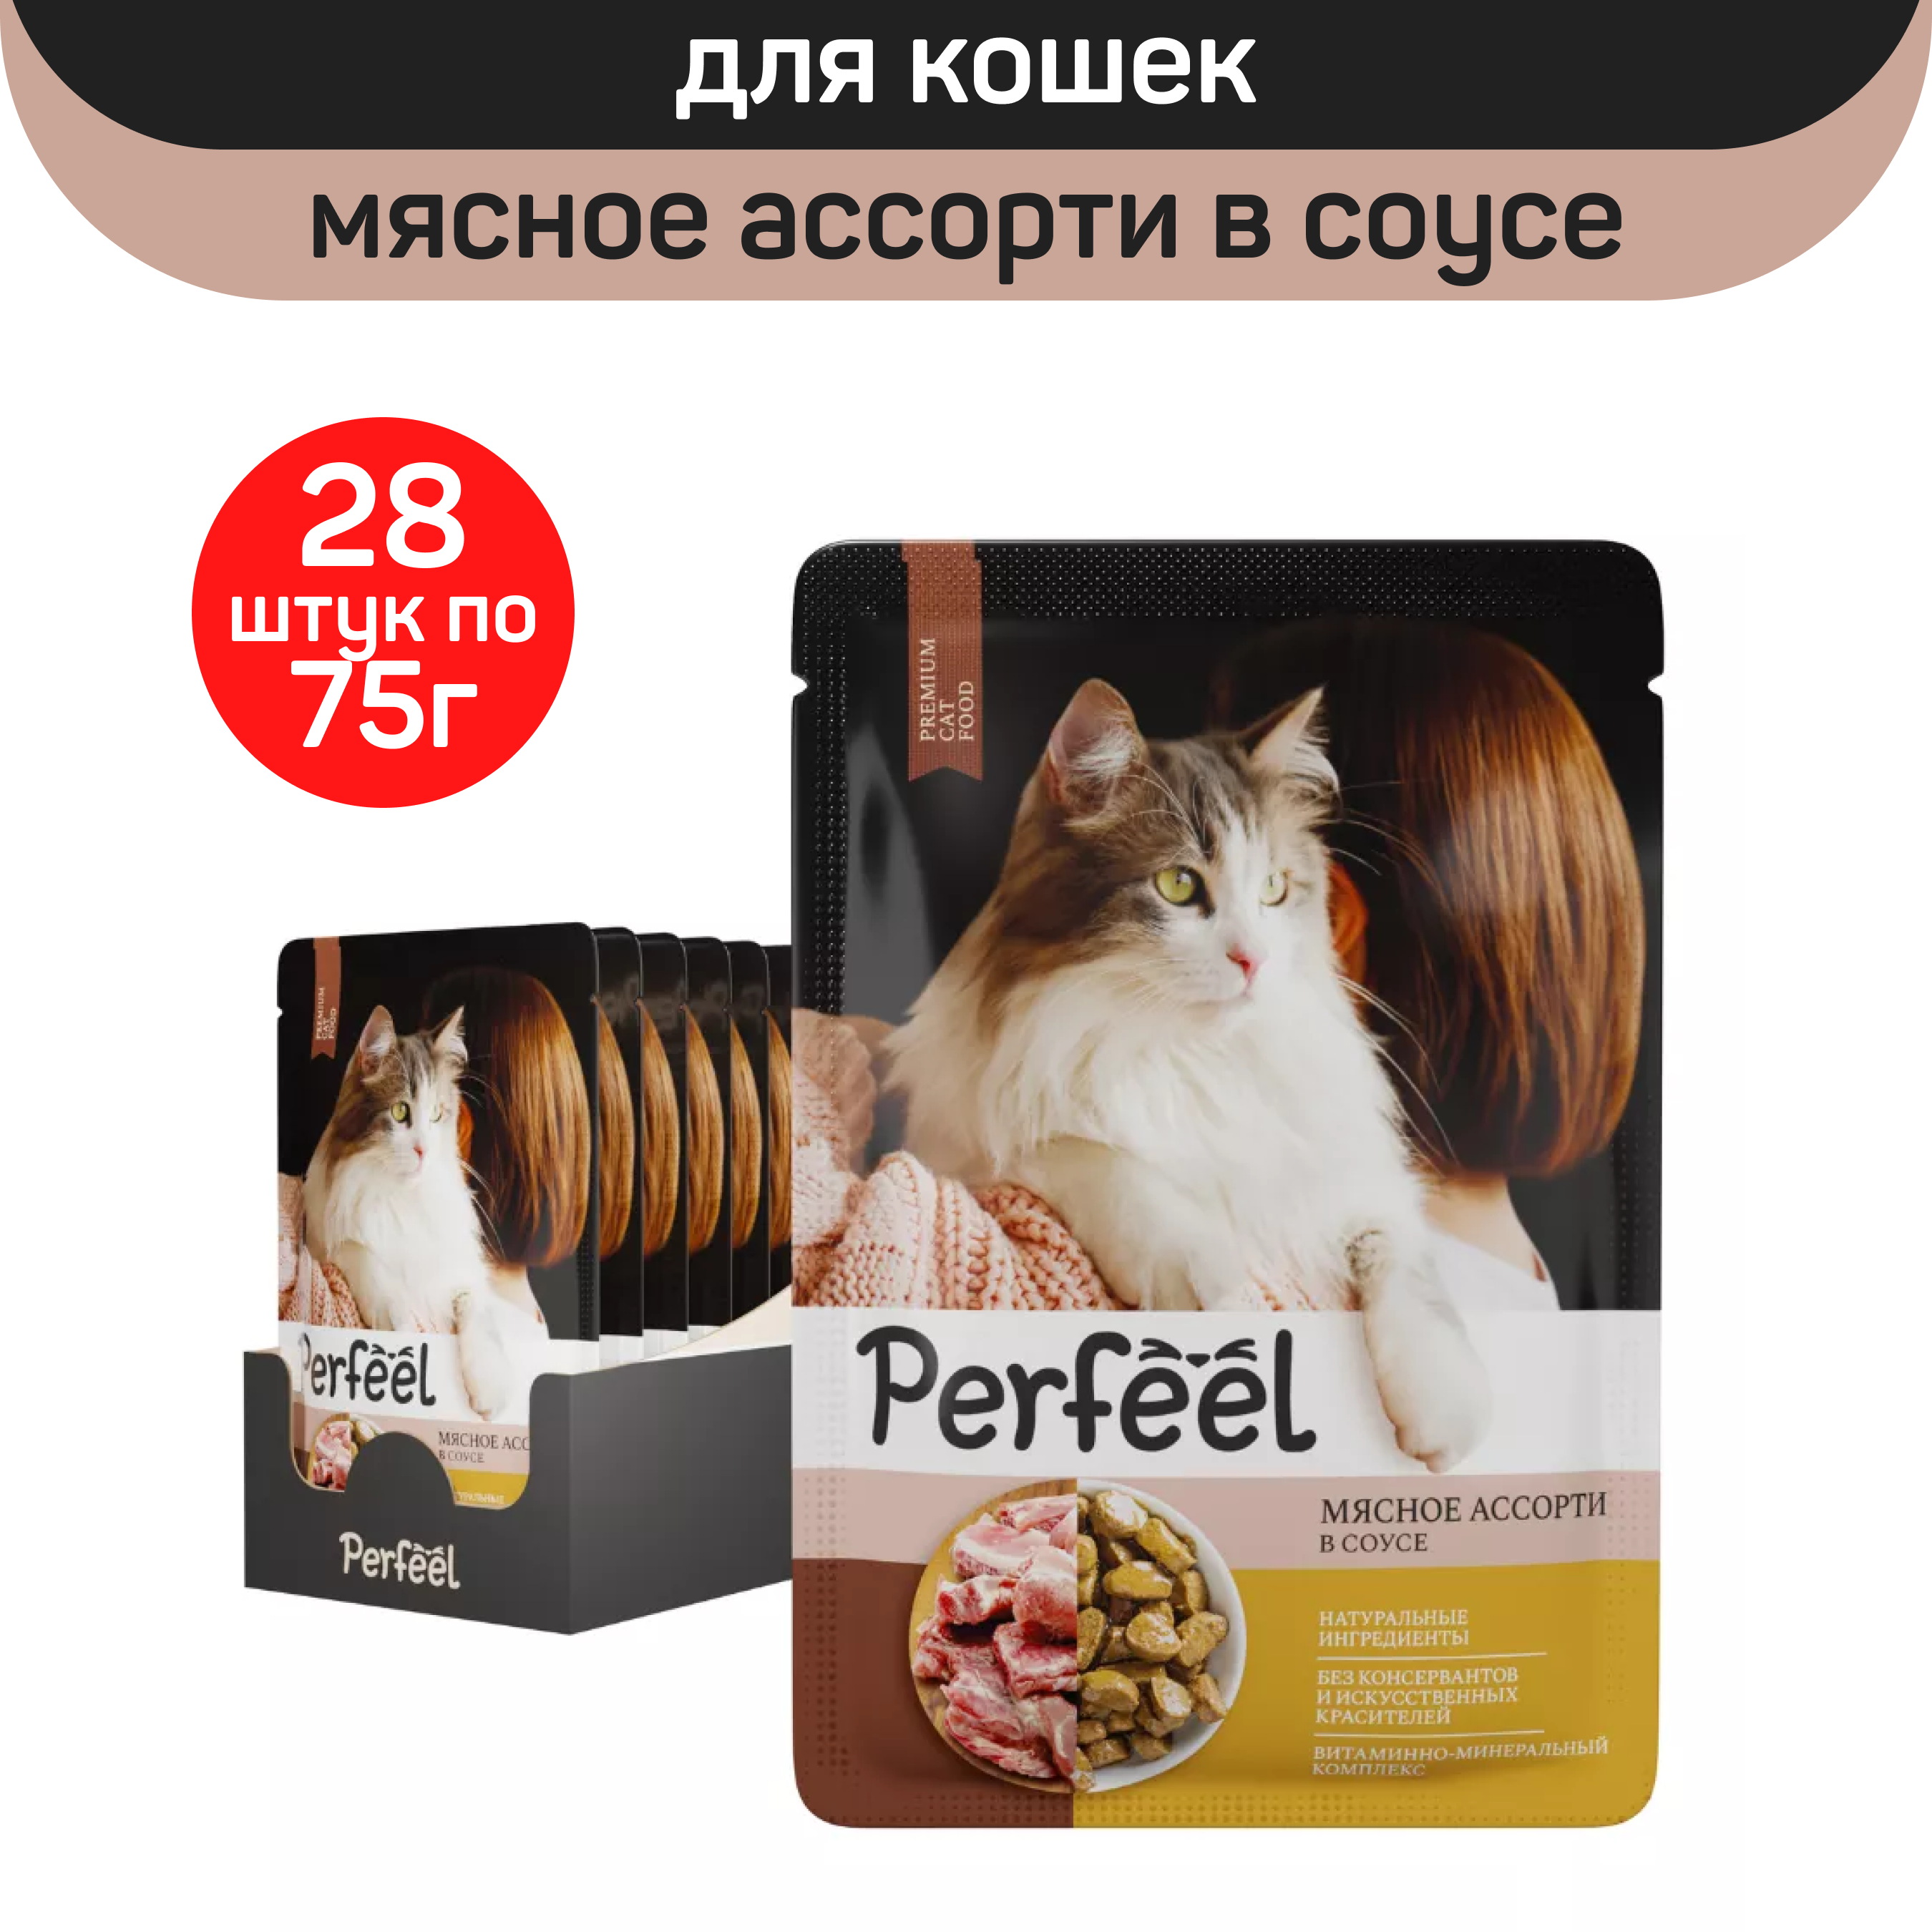 Влажный корм для кошек Perfeel, мясное ассорти в соусе, 28 шт по 75 г